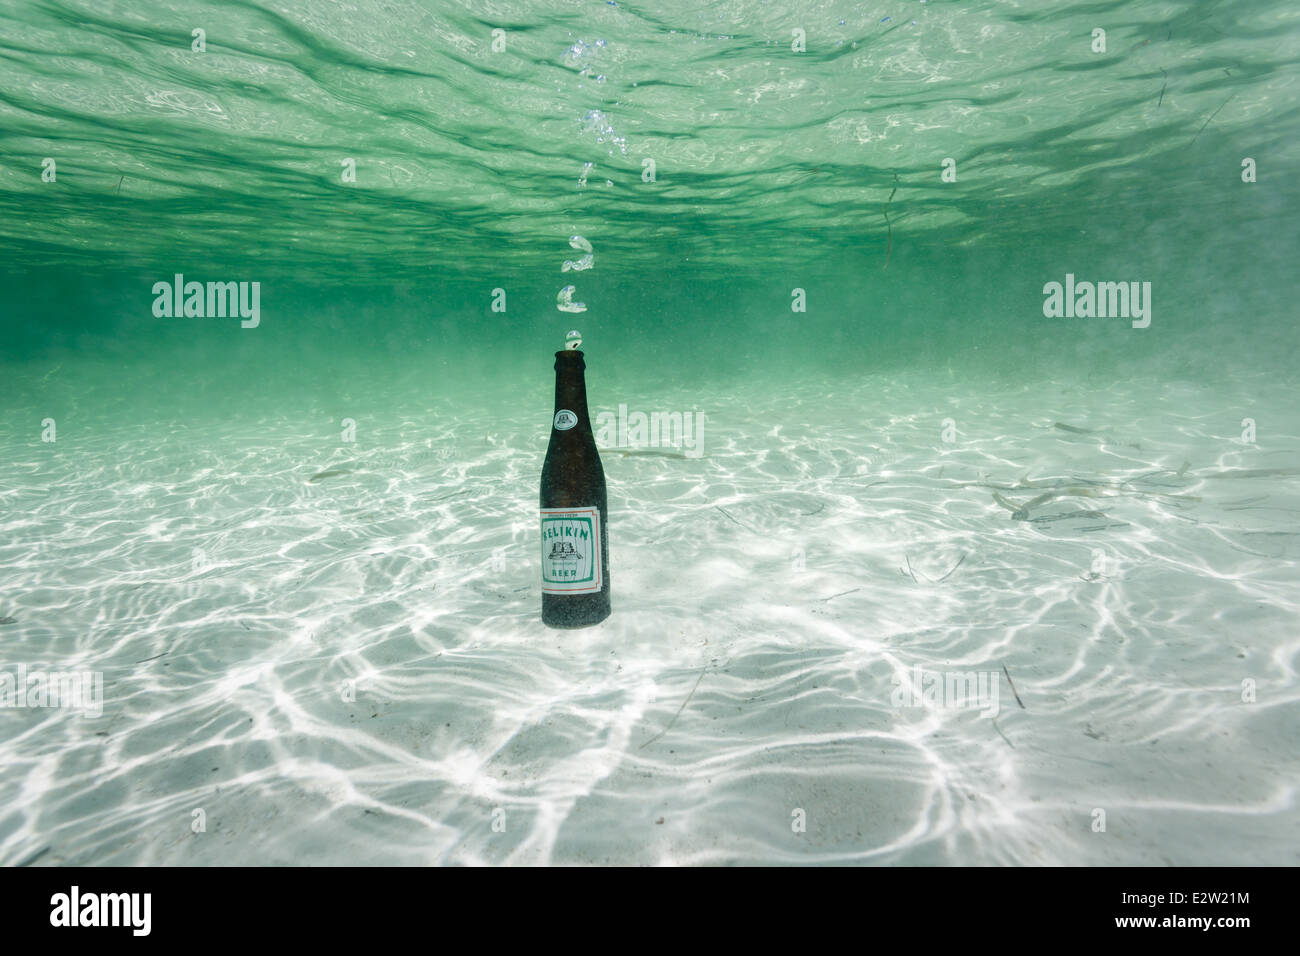 Bouteille de bière Belikin sur sable blanc au fond de l'océan soufflant des bulles tout en se remplissant d'eau Banque D'Images